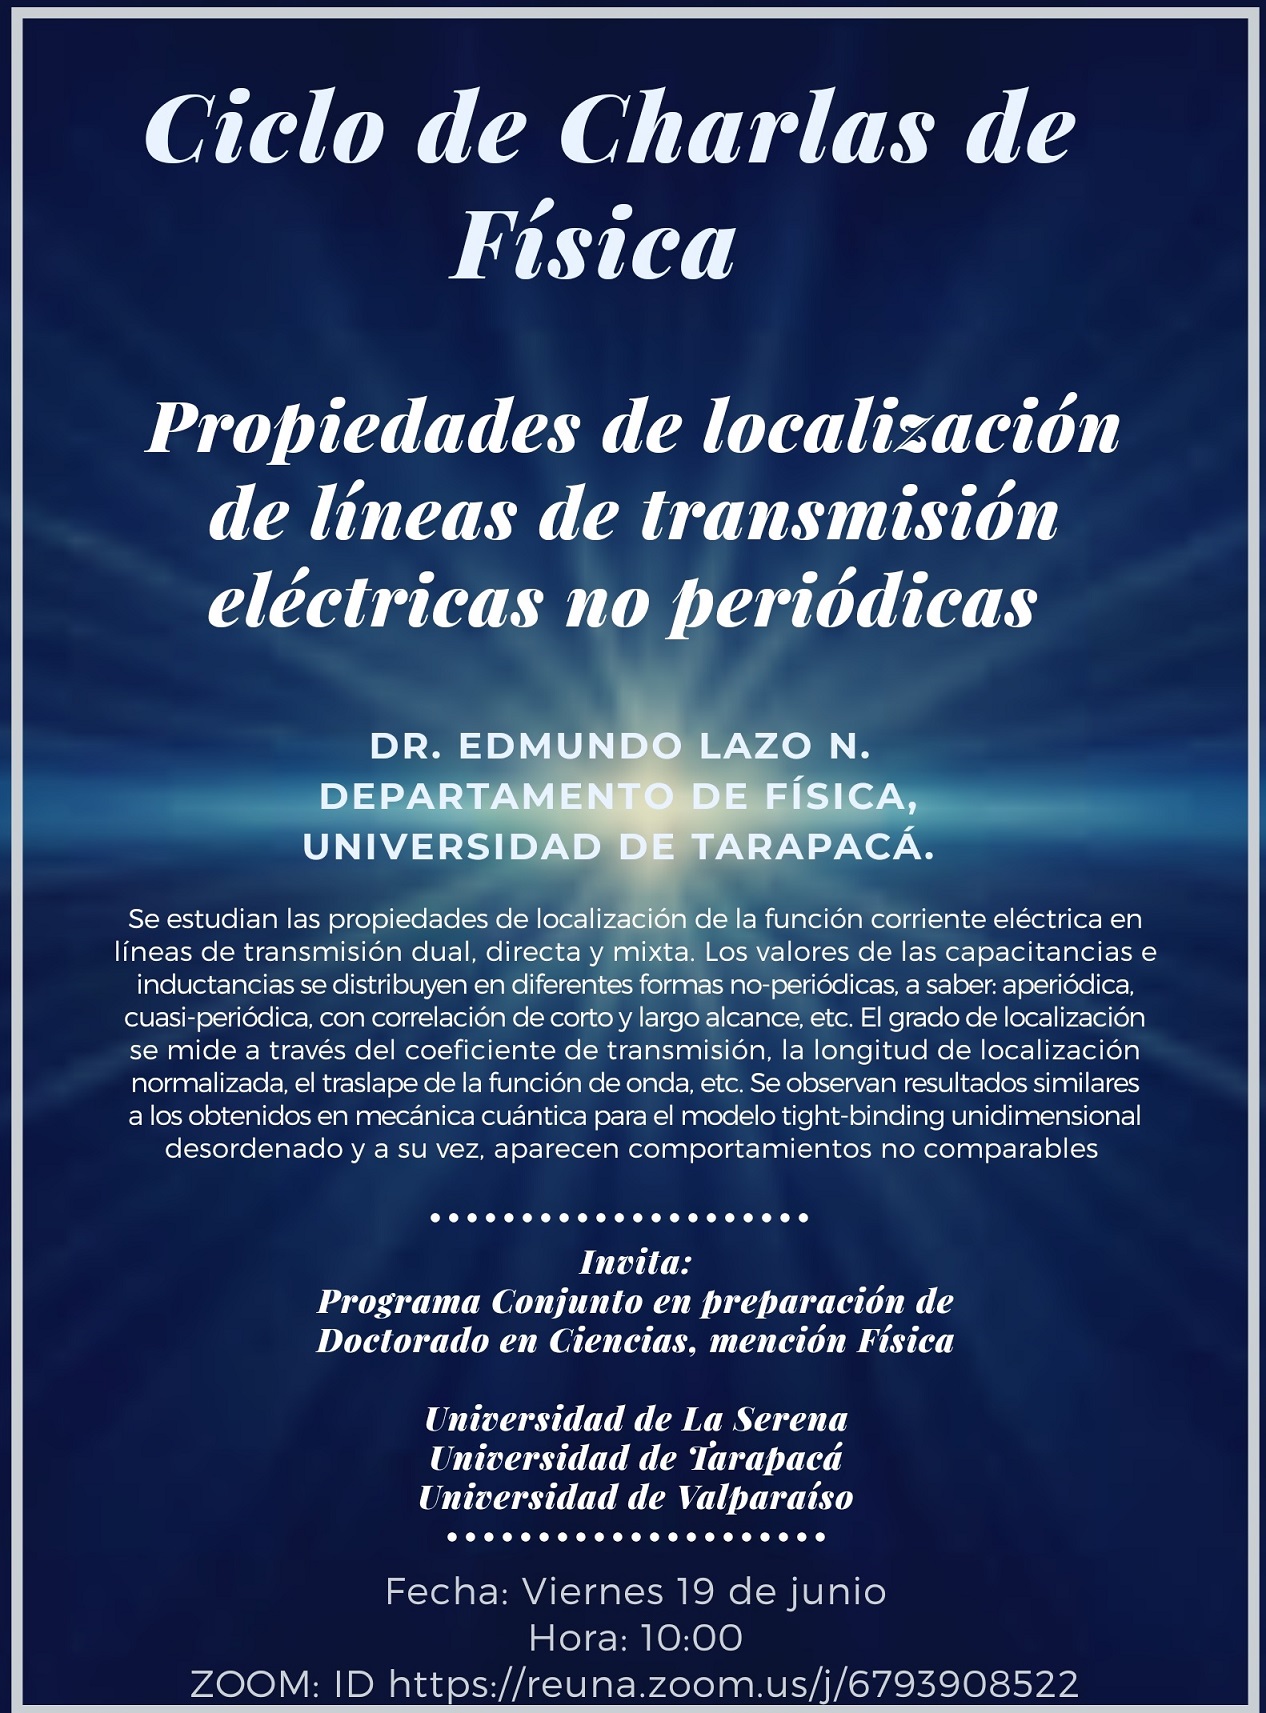 [Viernes 10 am] Ciclo de Charlas en Física – Charla Nº2: “Propiedades de localización de líneas de transmisión eléctricas no-periódicas”